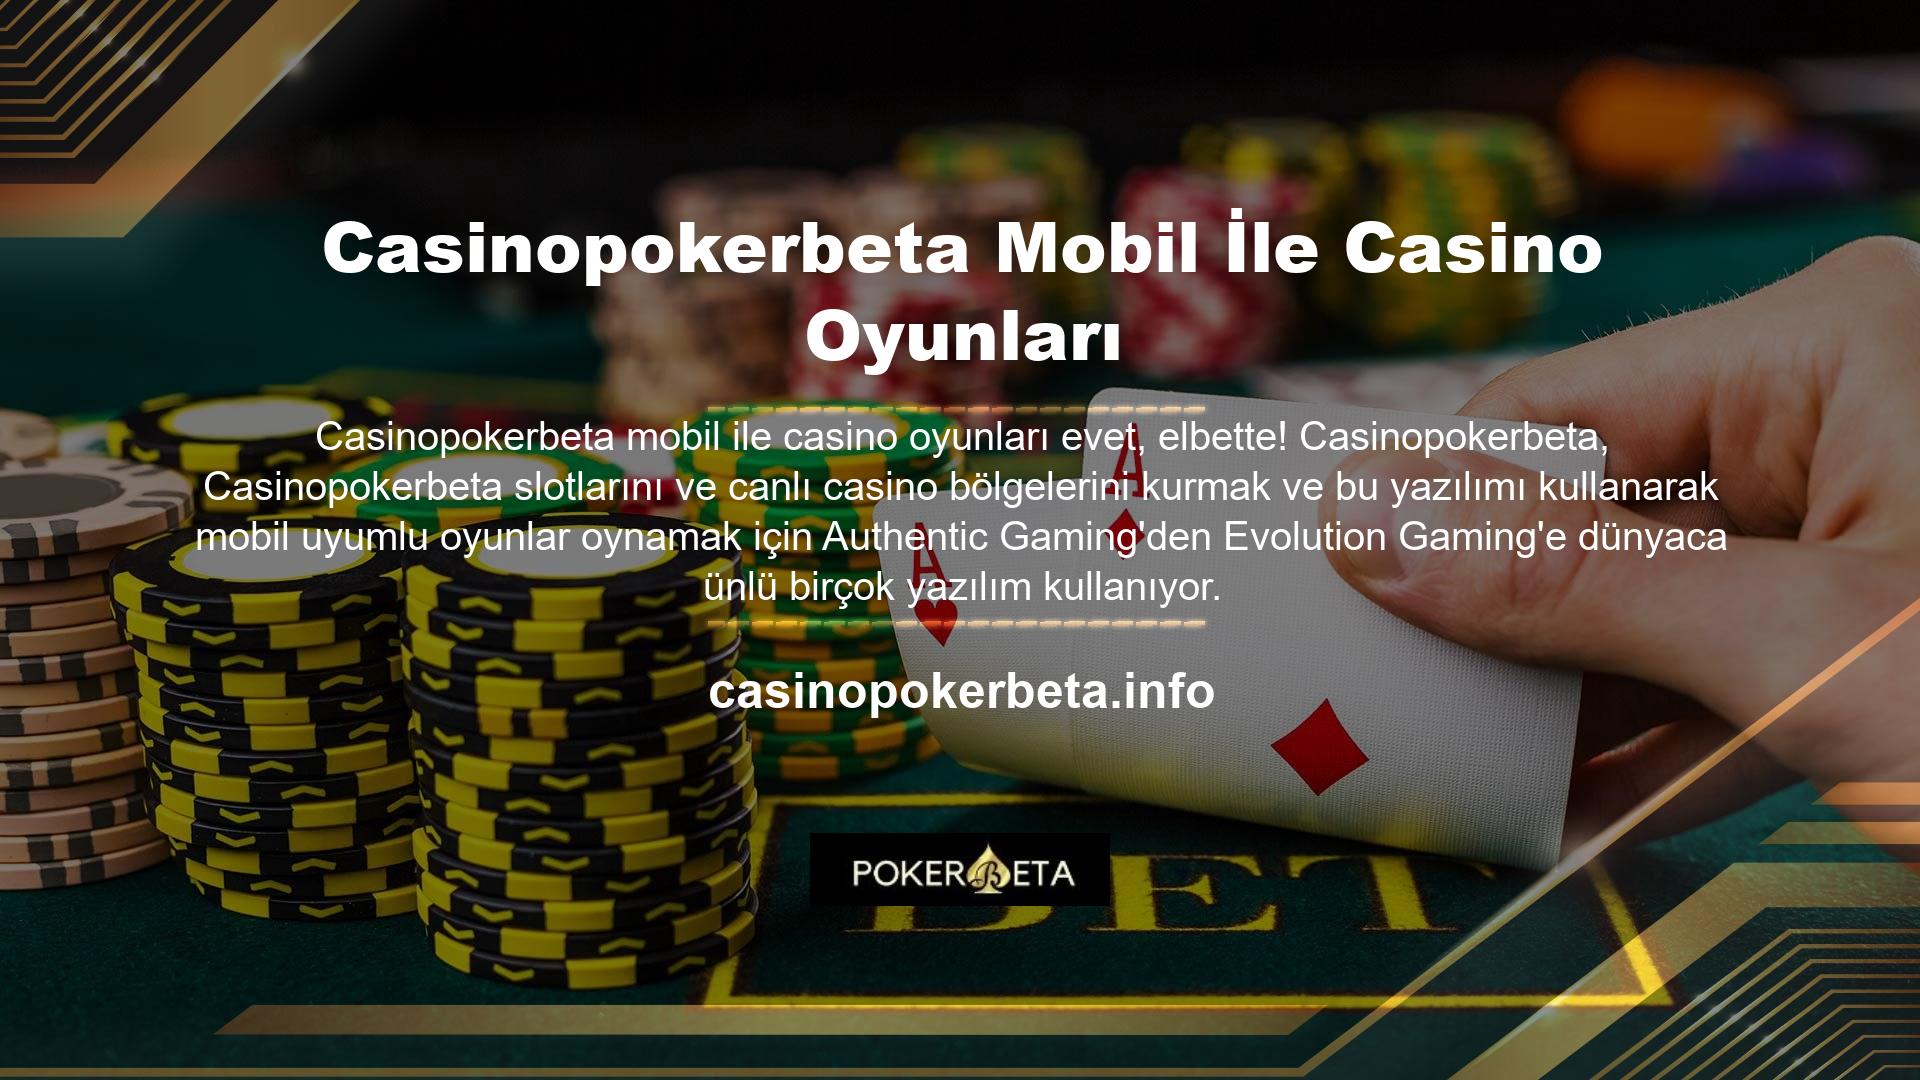 Princess Live Casino Portföy Arşivi yüzlerce slot içerir ve her gün daha fazlası eklenir